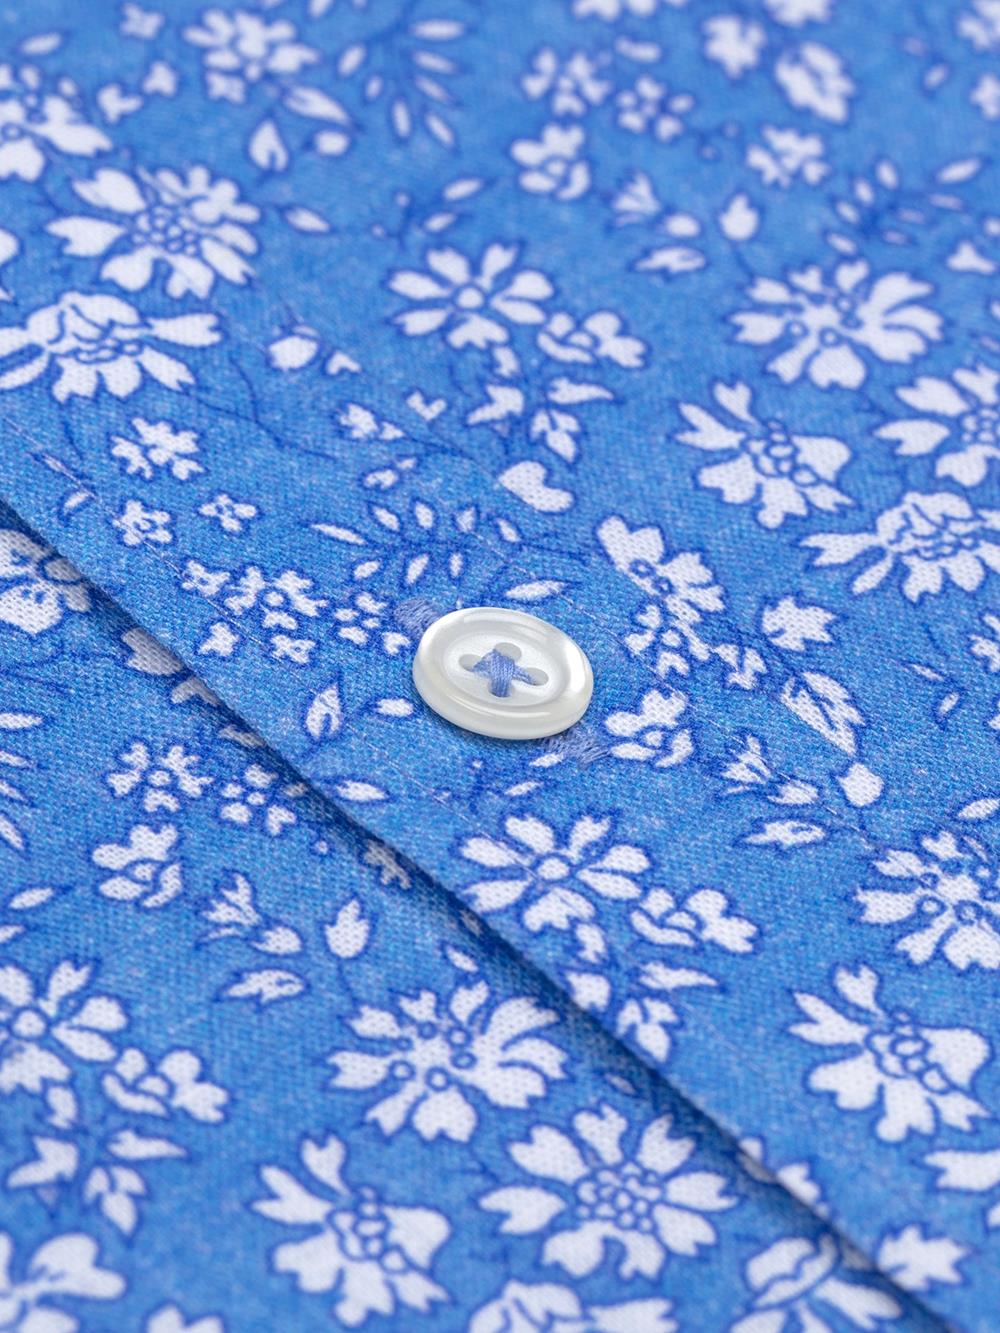 Glen linen slim fit shirt in floral print